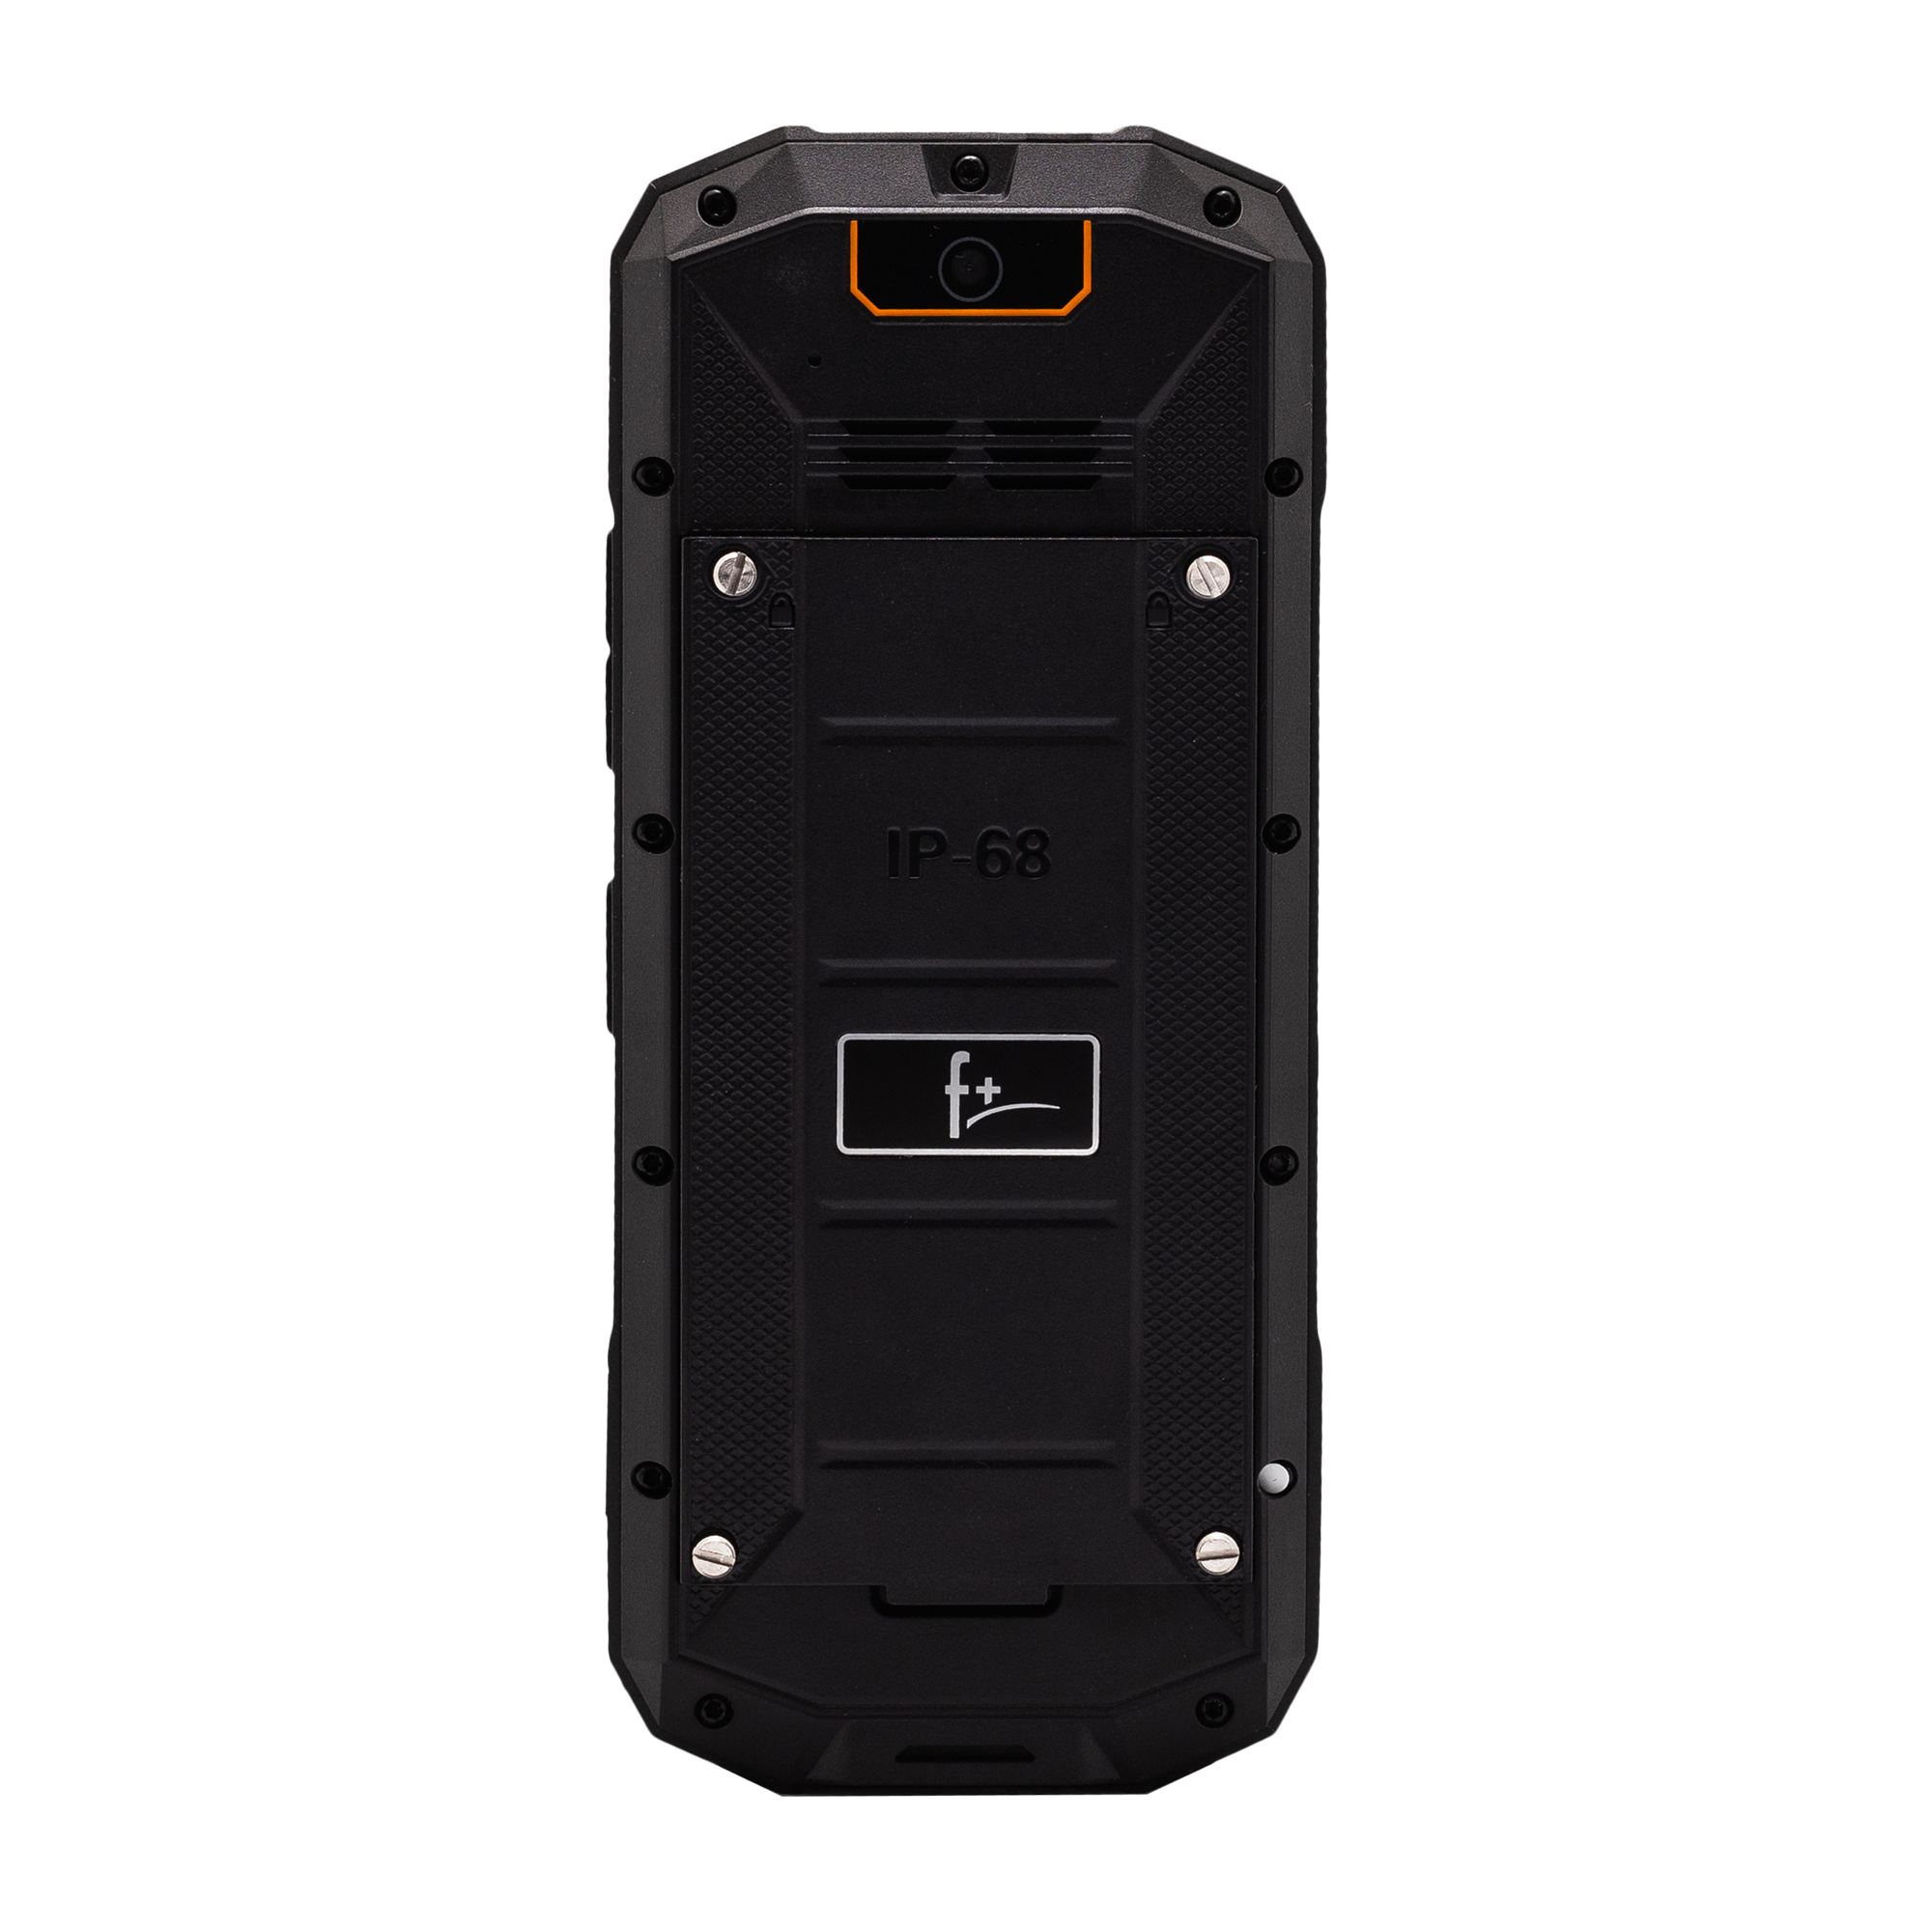 Мобильный телефон F+ R240 Black-orange, 2 Nano SIM, 2G, Type-C